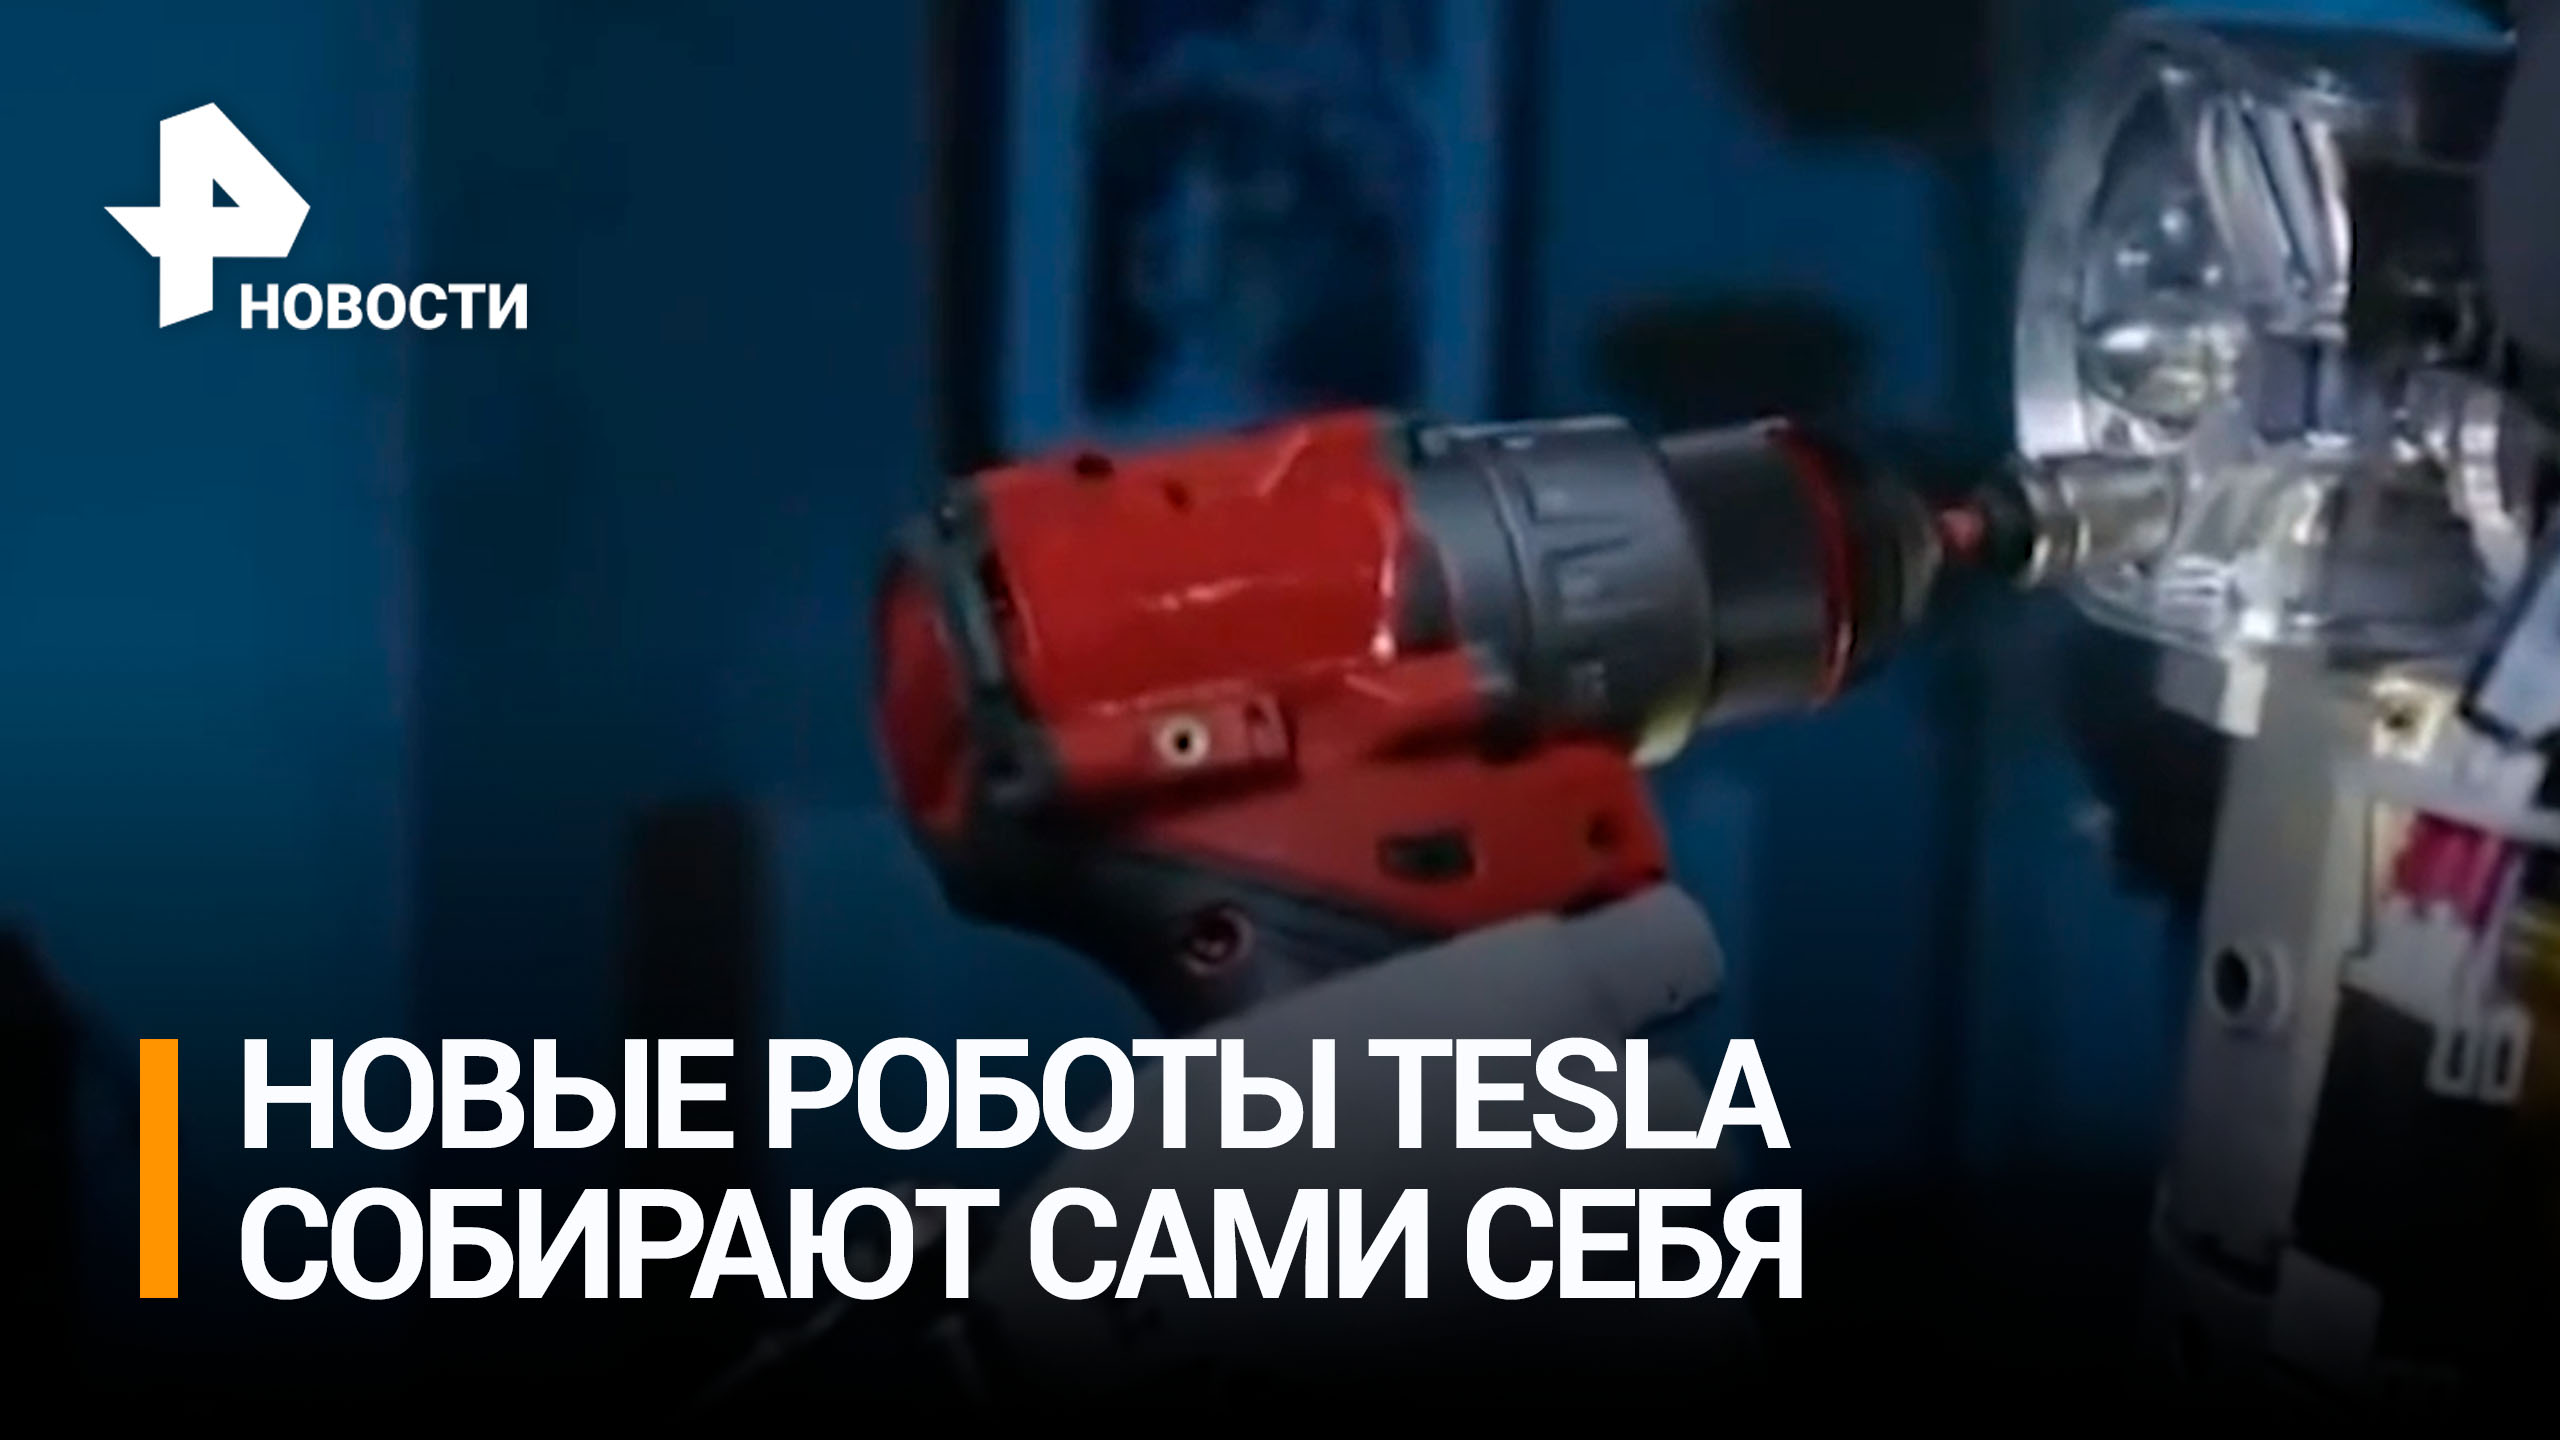 Tesla представила роботов-гуманоидов, способных собирать себе подобных / РЕН Новости